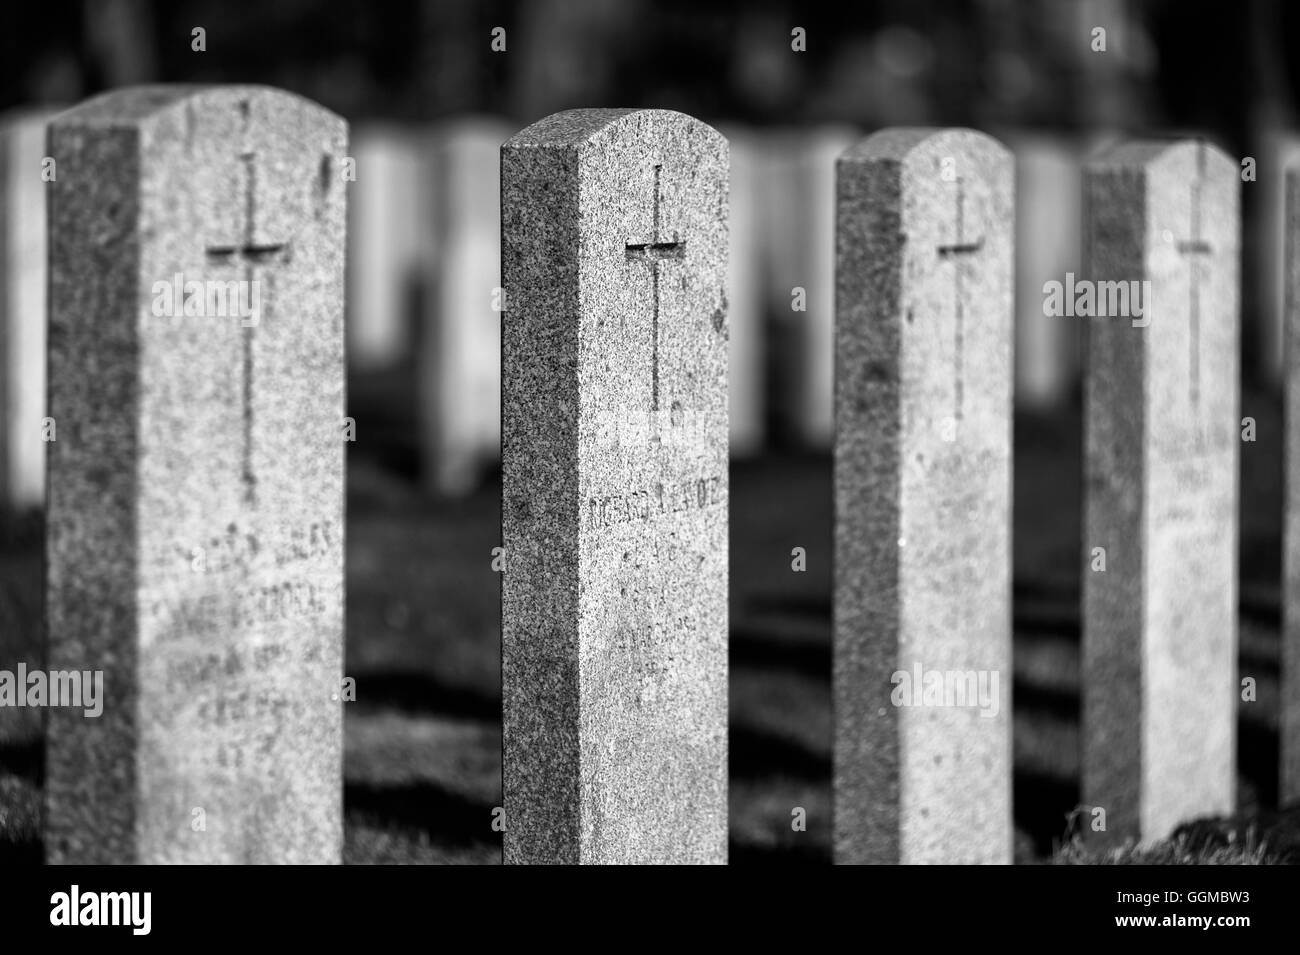 military headstones Stock Photo